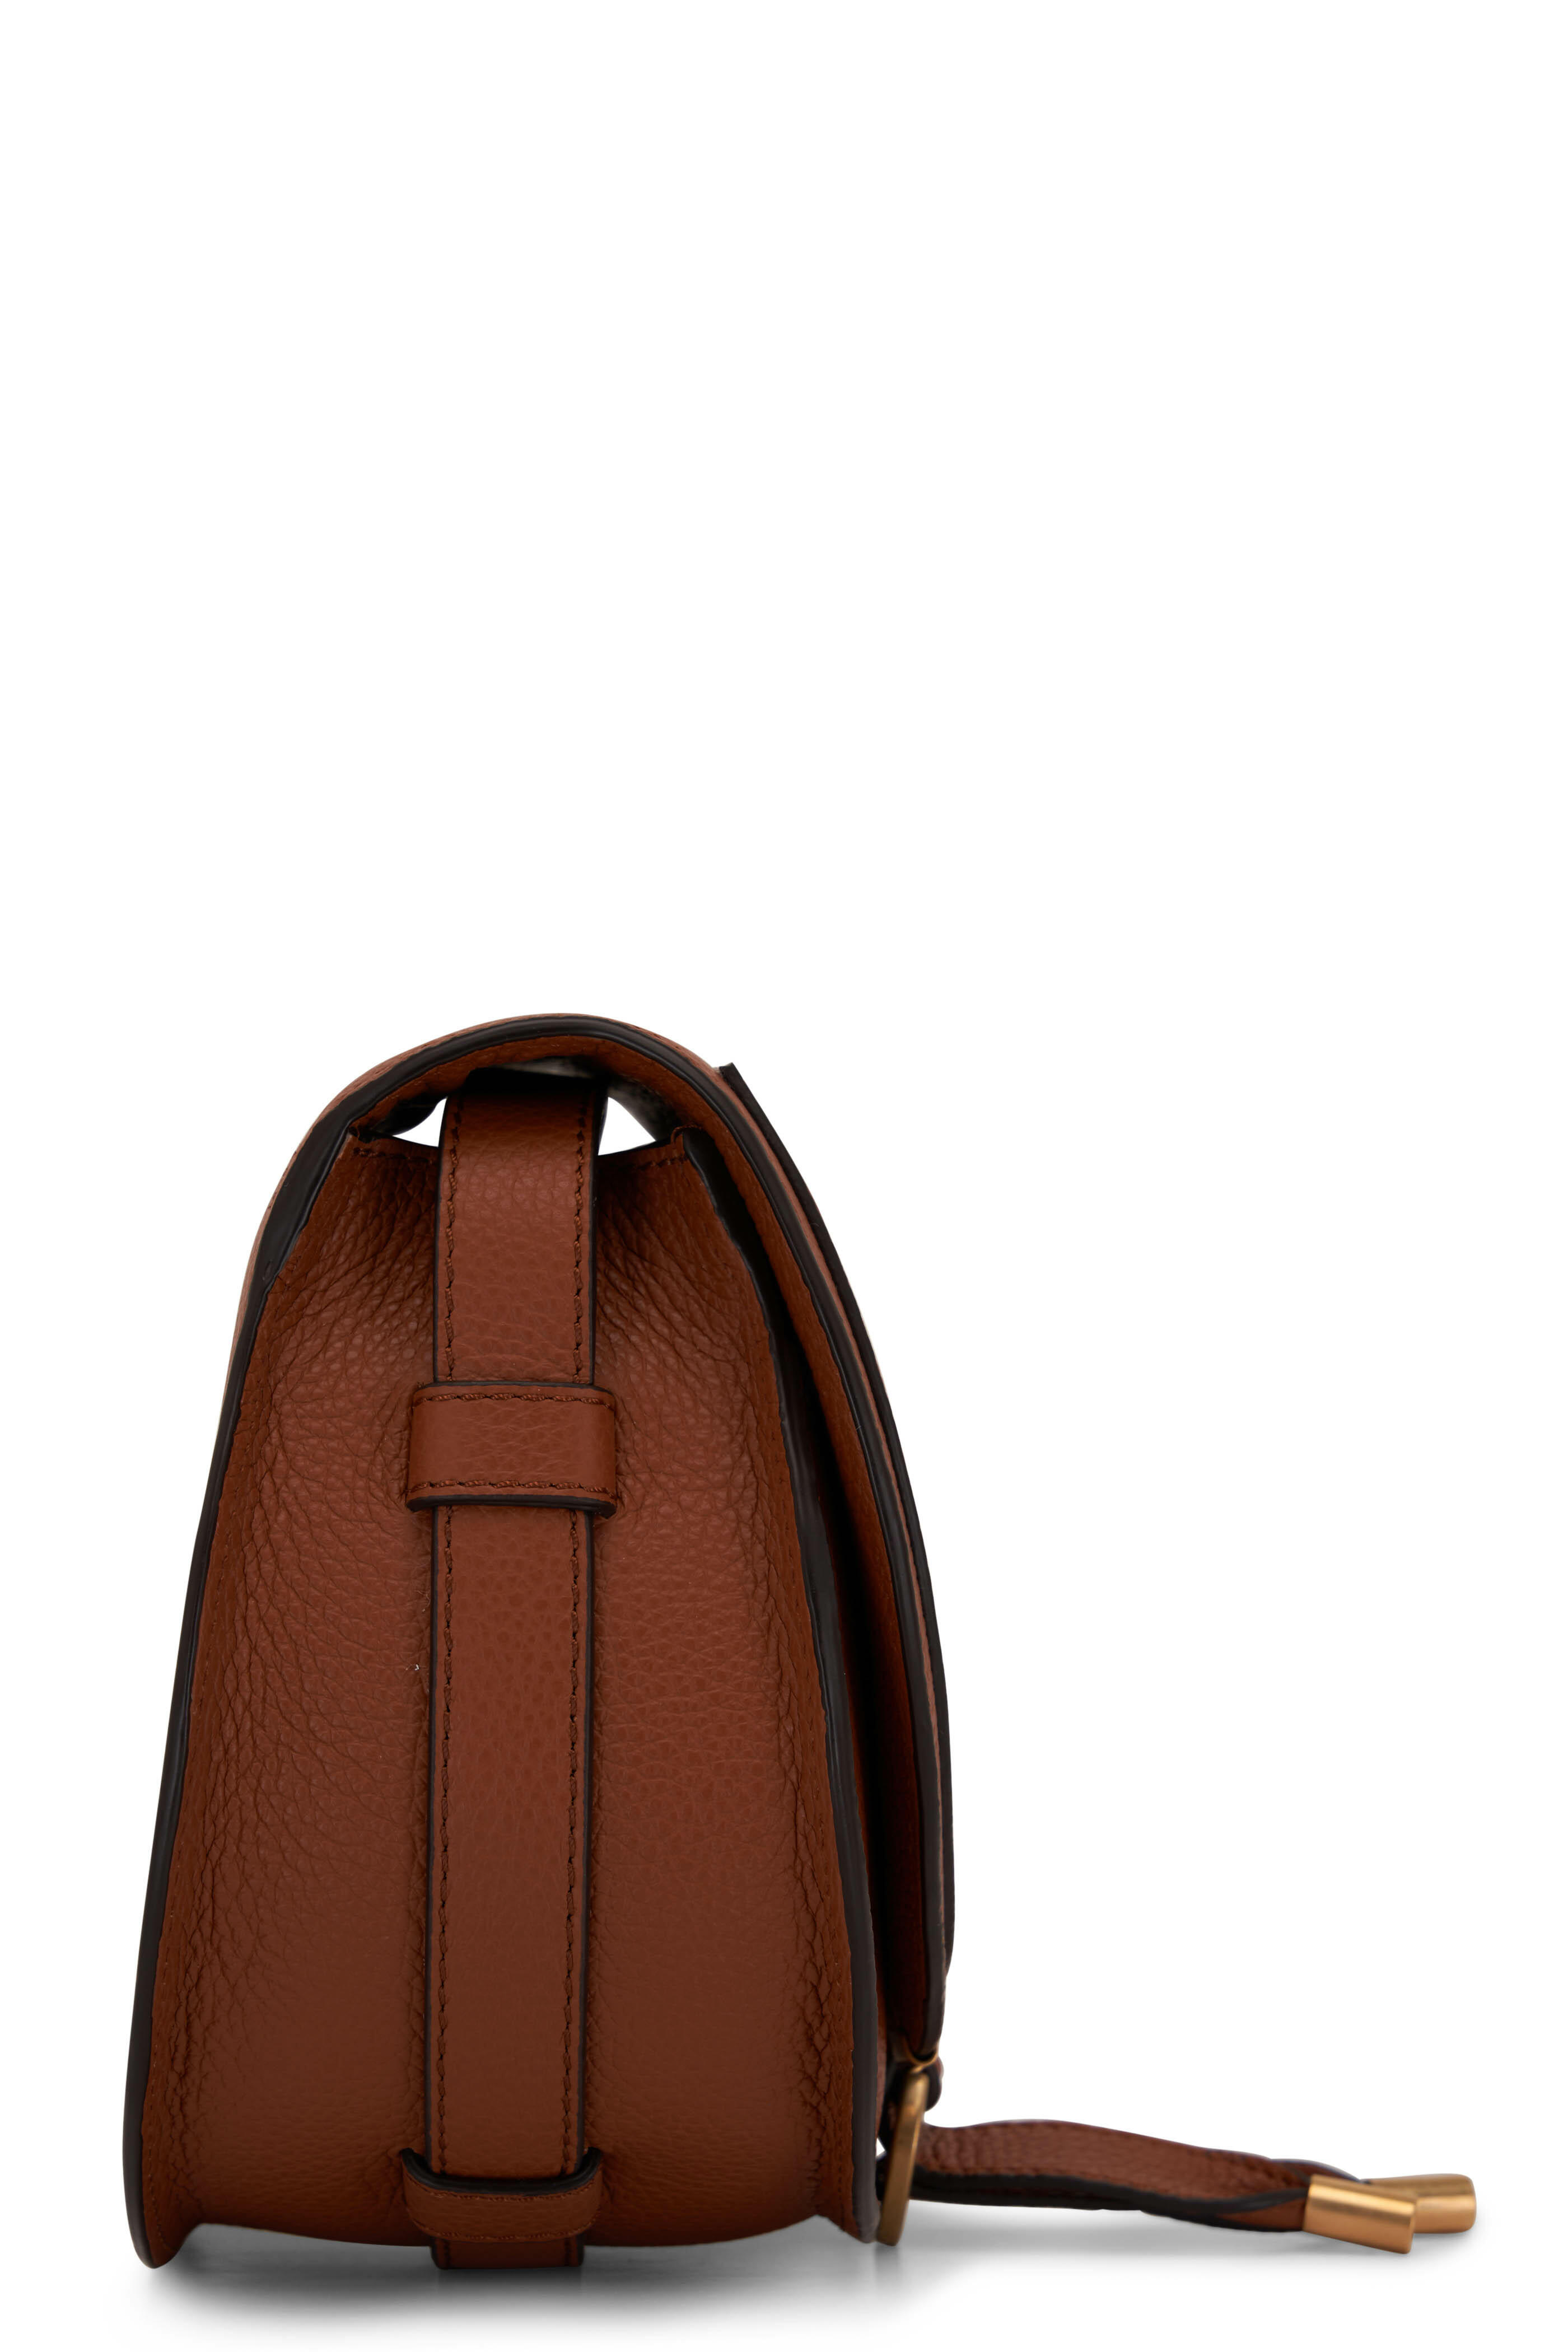 SOLD Prada Flap Front Saddle Tan Leather Shoulder bag Gold